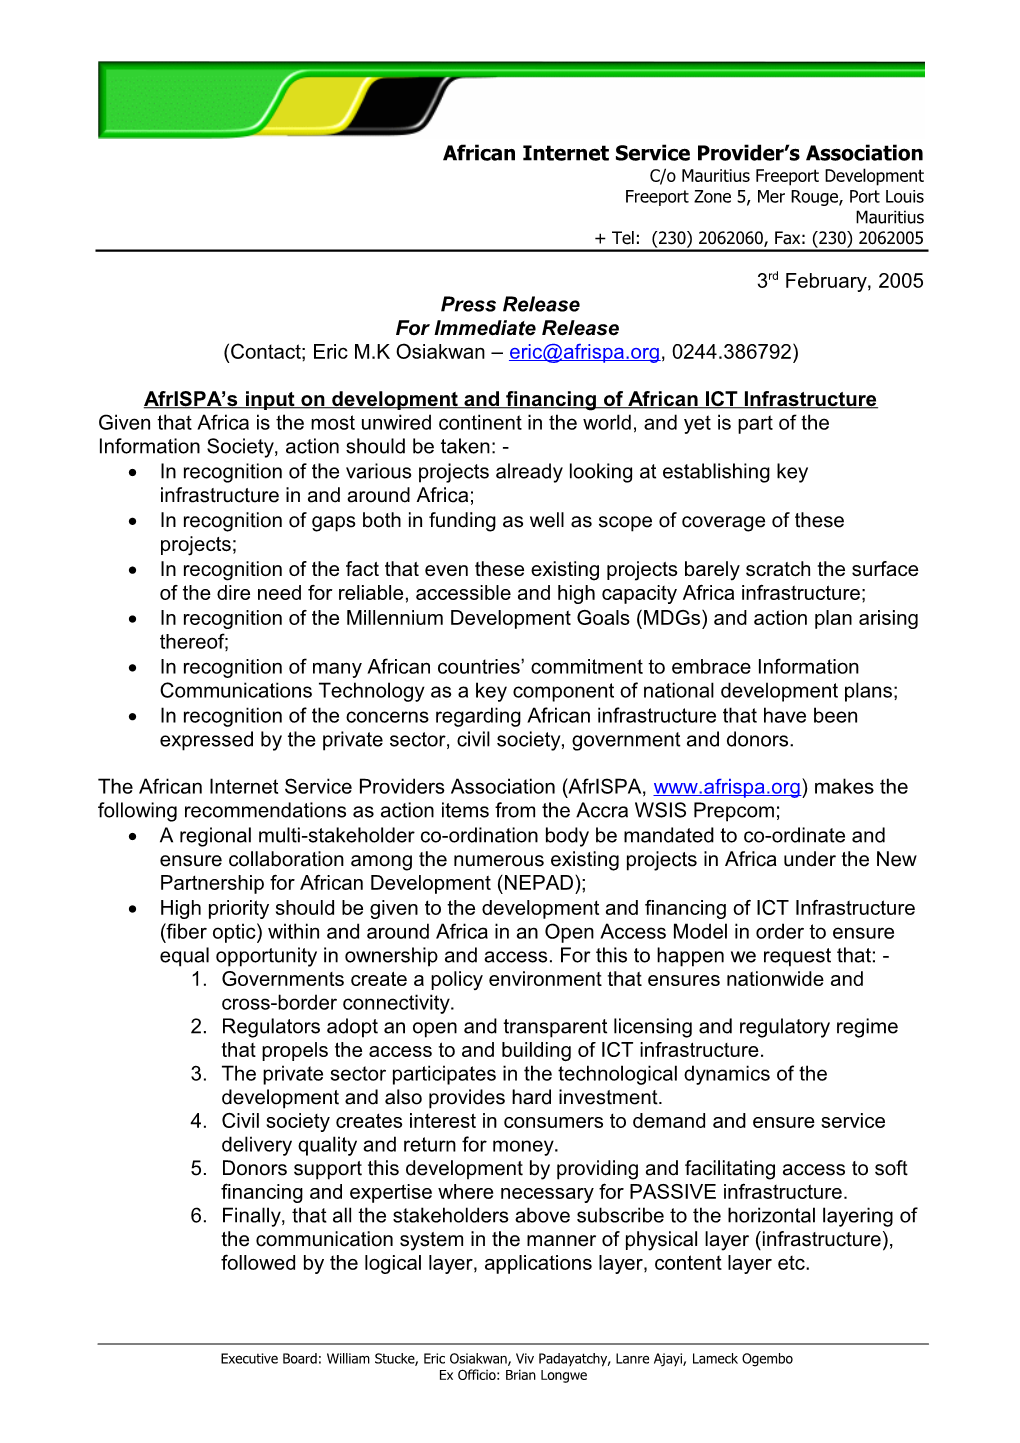 Afrispa Press Release 20041201 Re Internet Governance